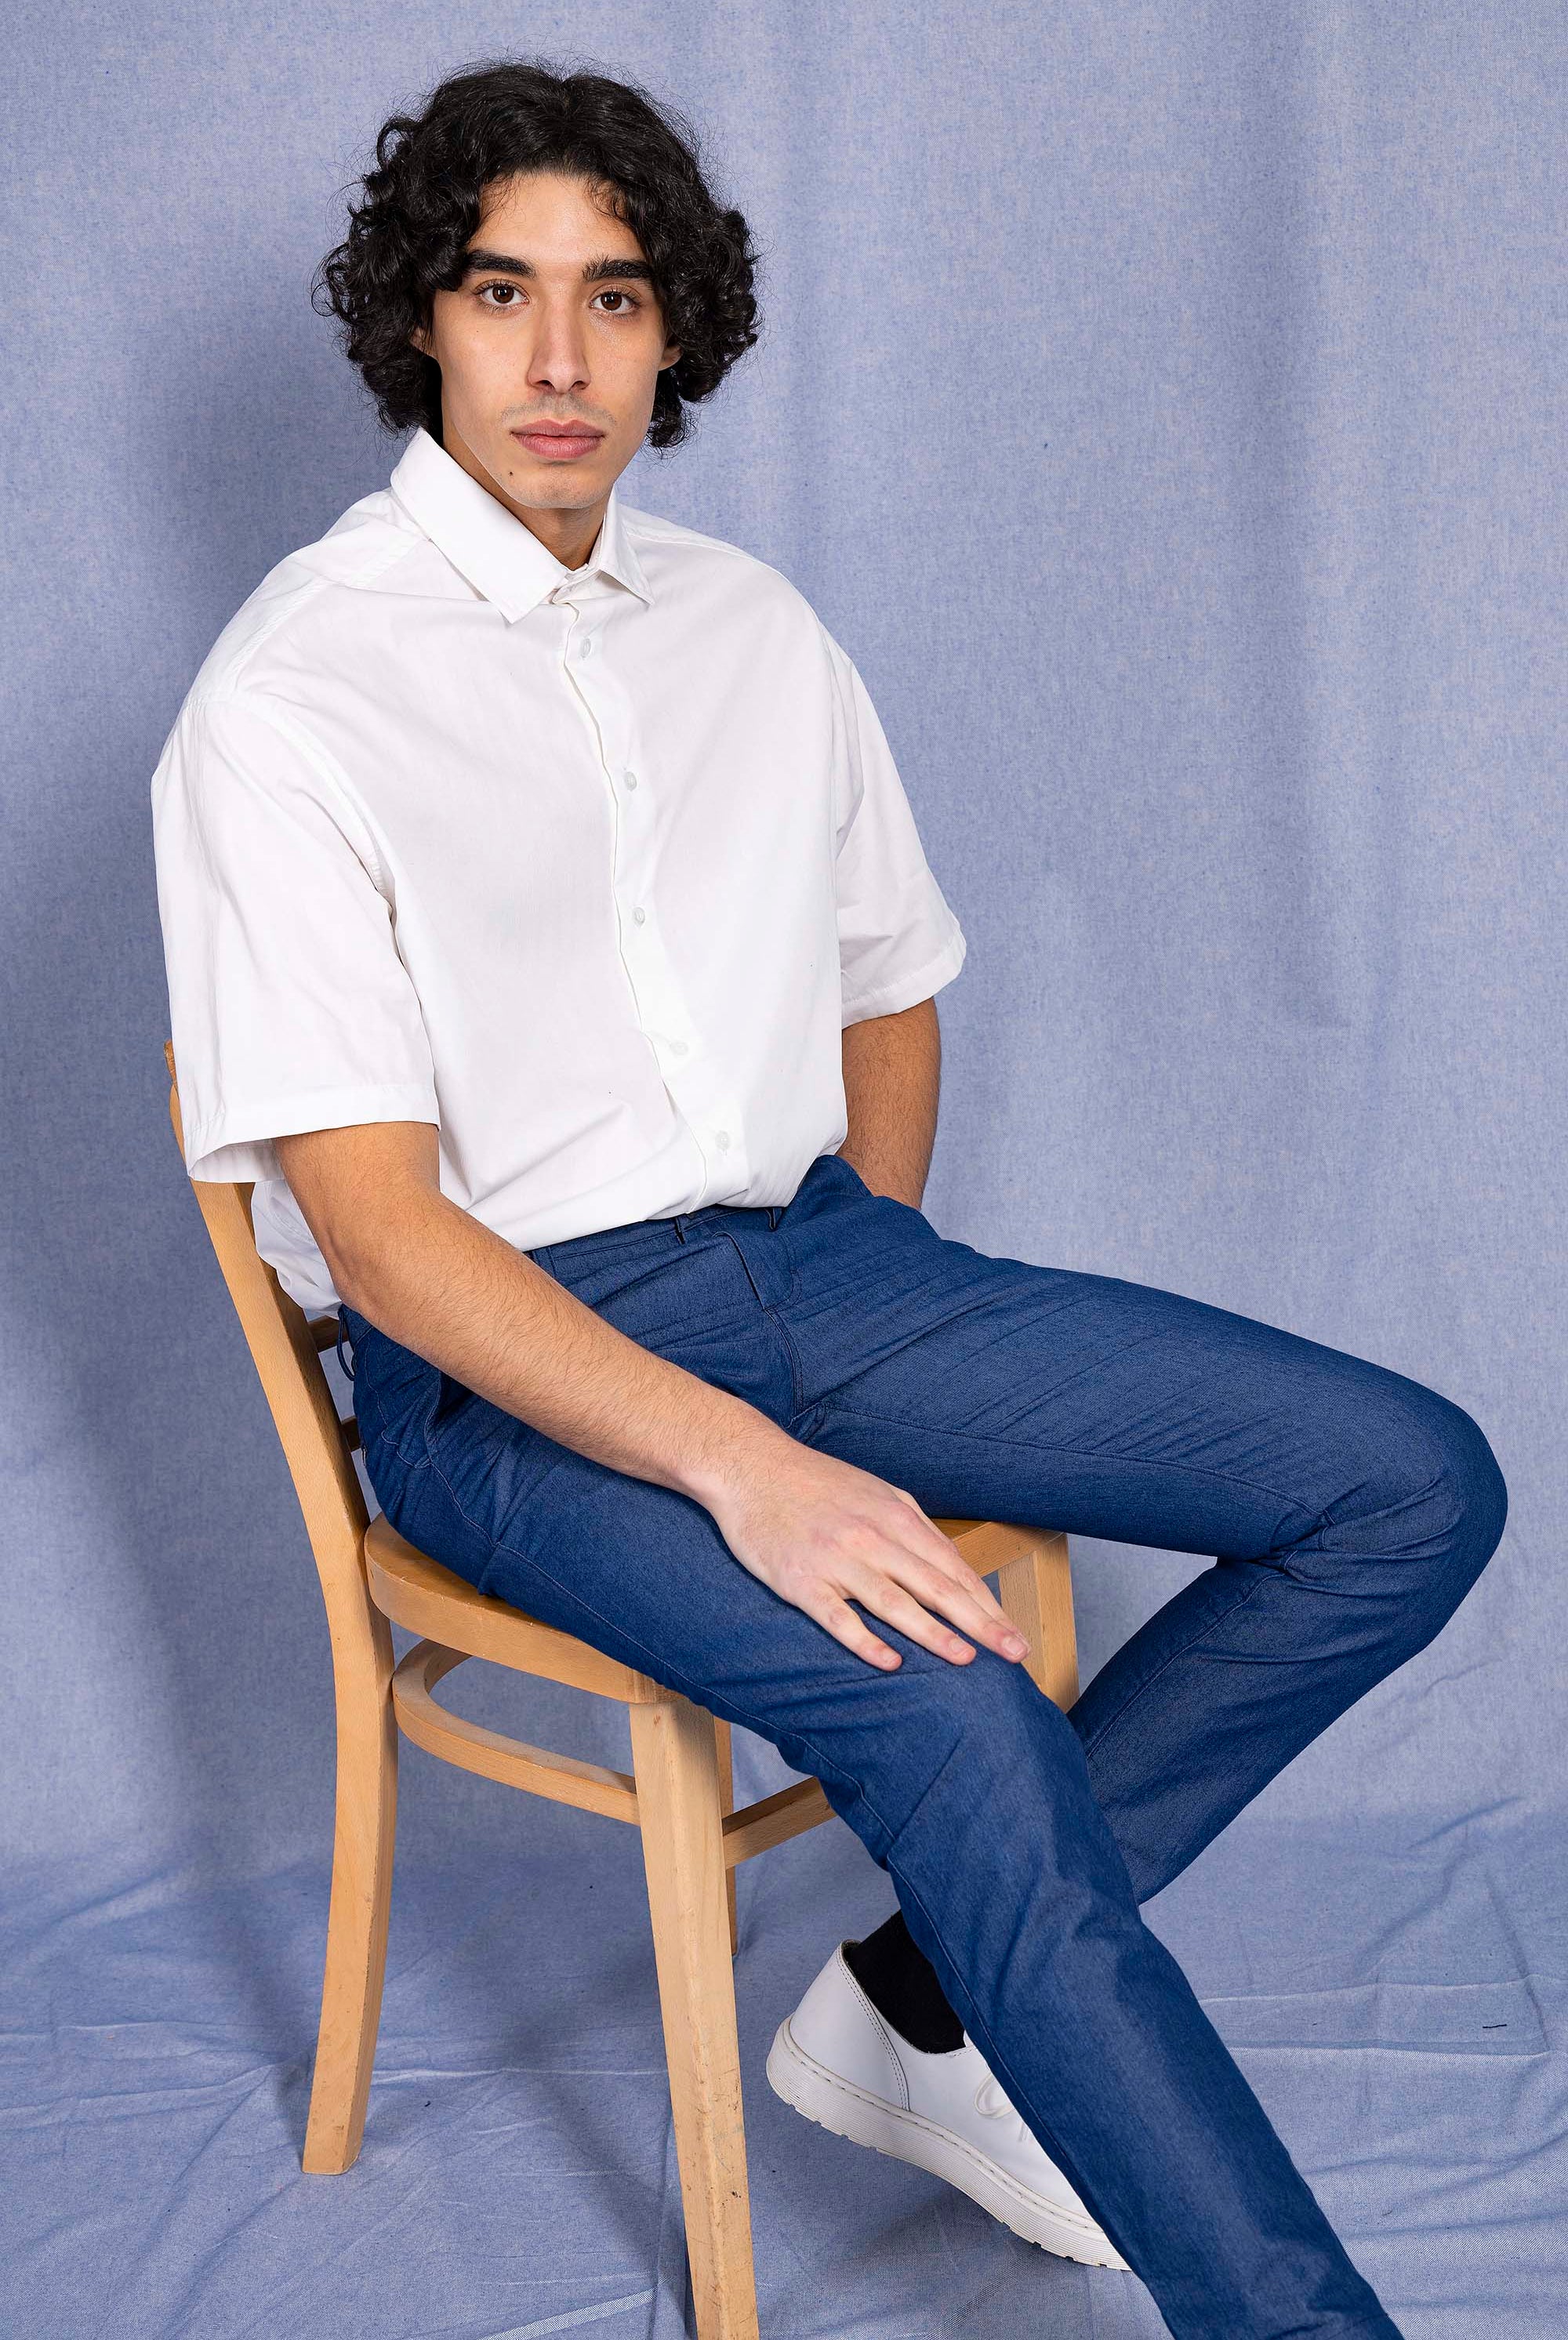 Pantalon Vacilacion Bleu Denim pantalons élégants pour hommes, déclinés dans une large gamme de motifs et de coupes